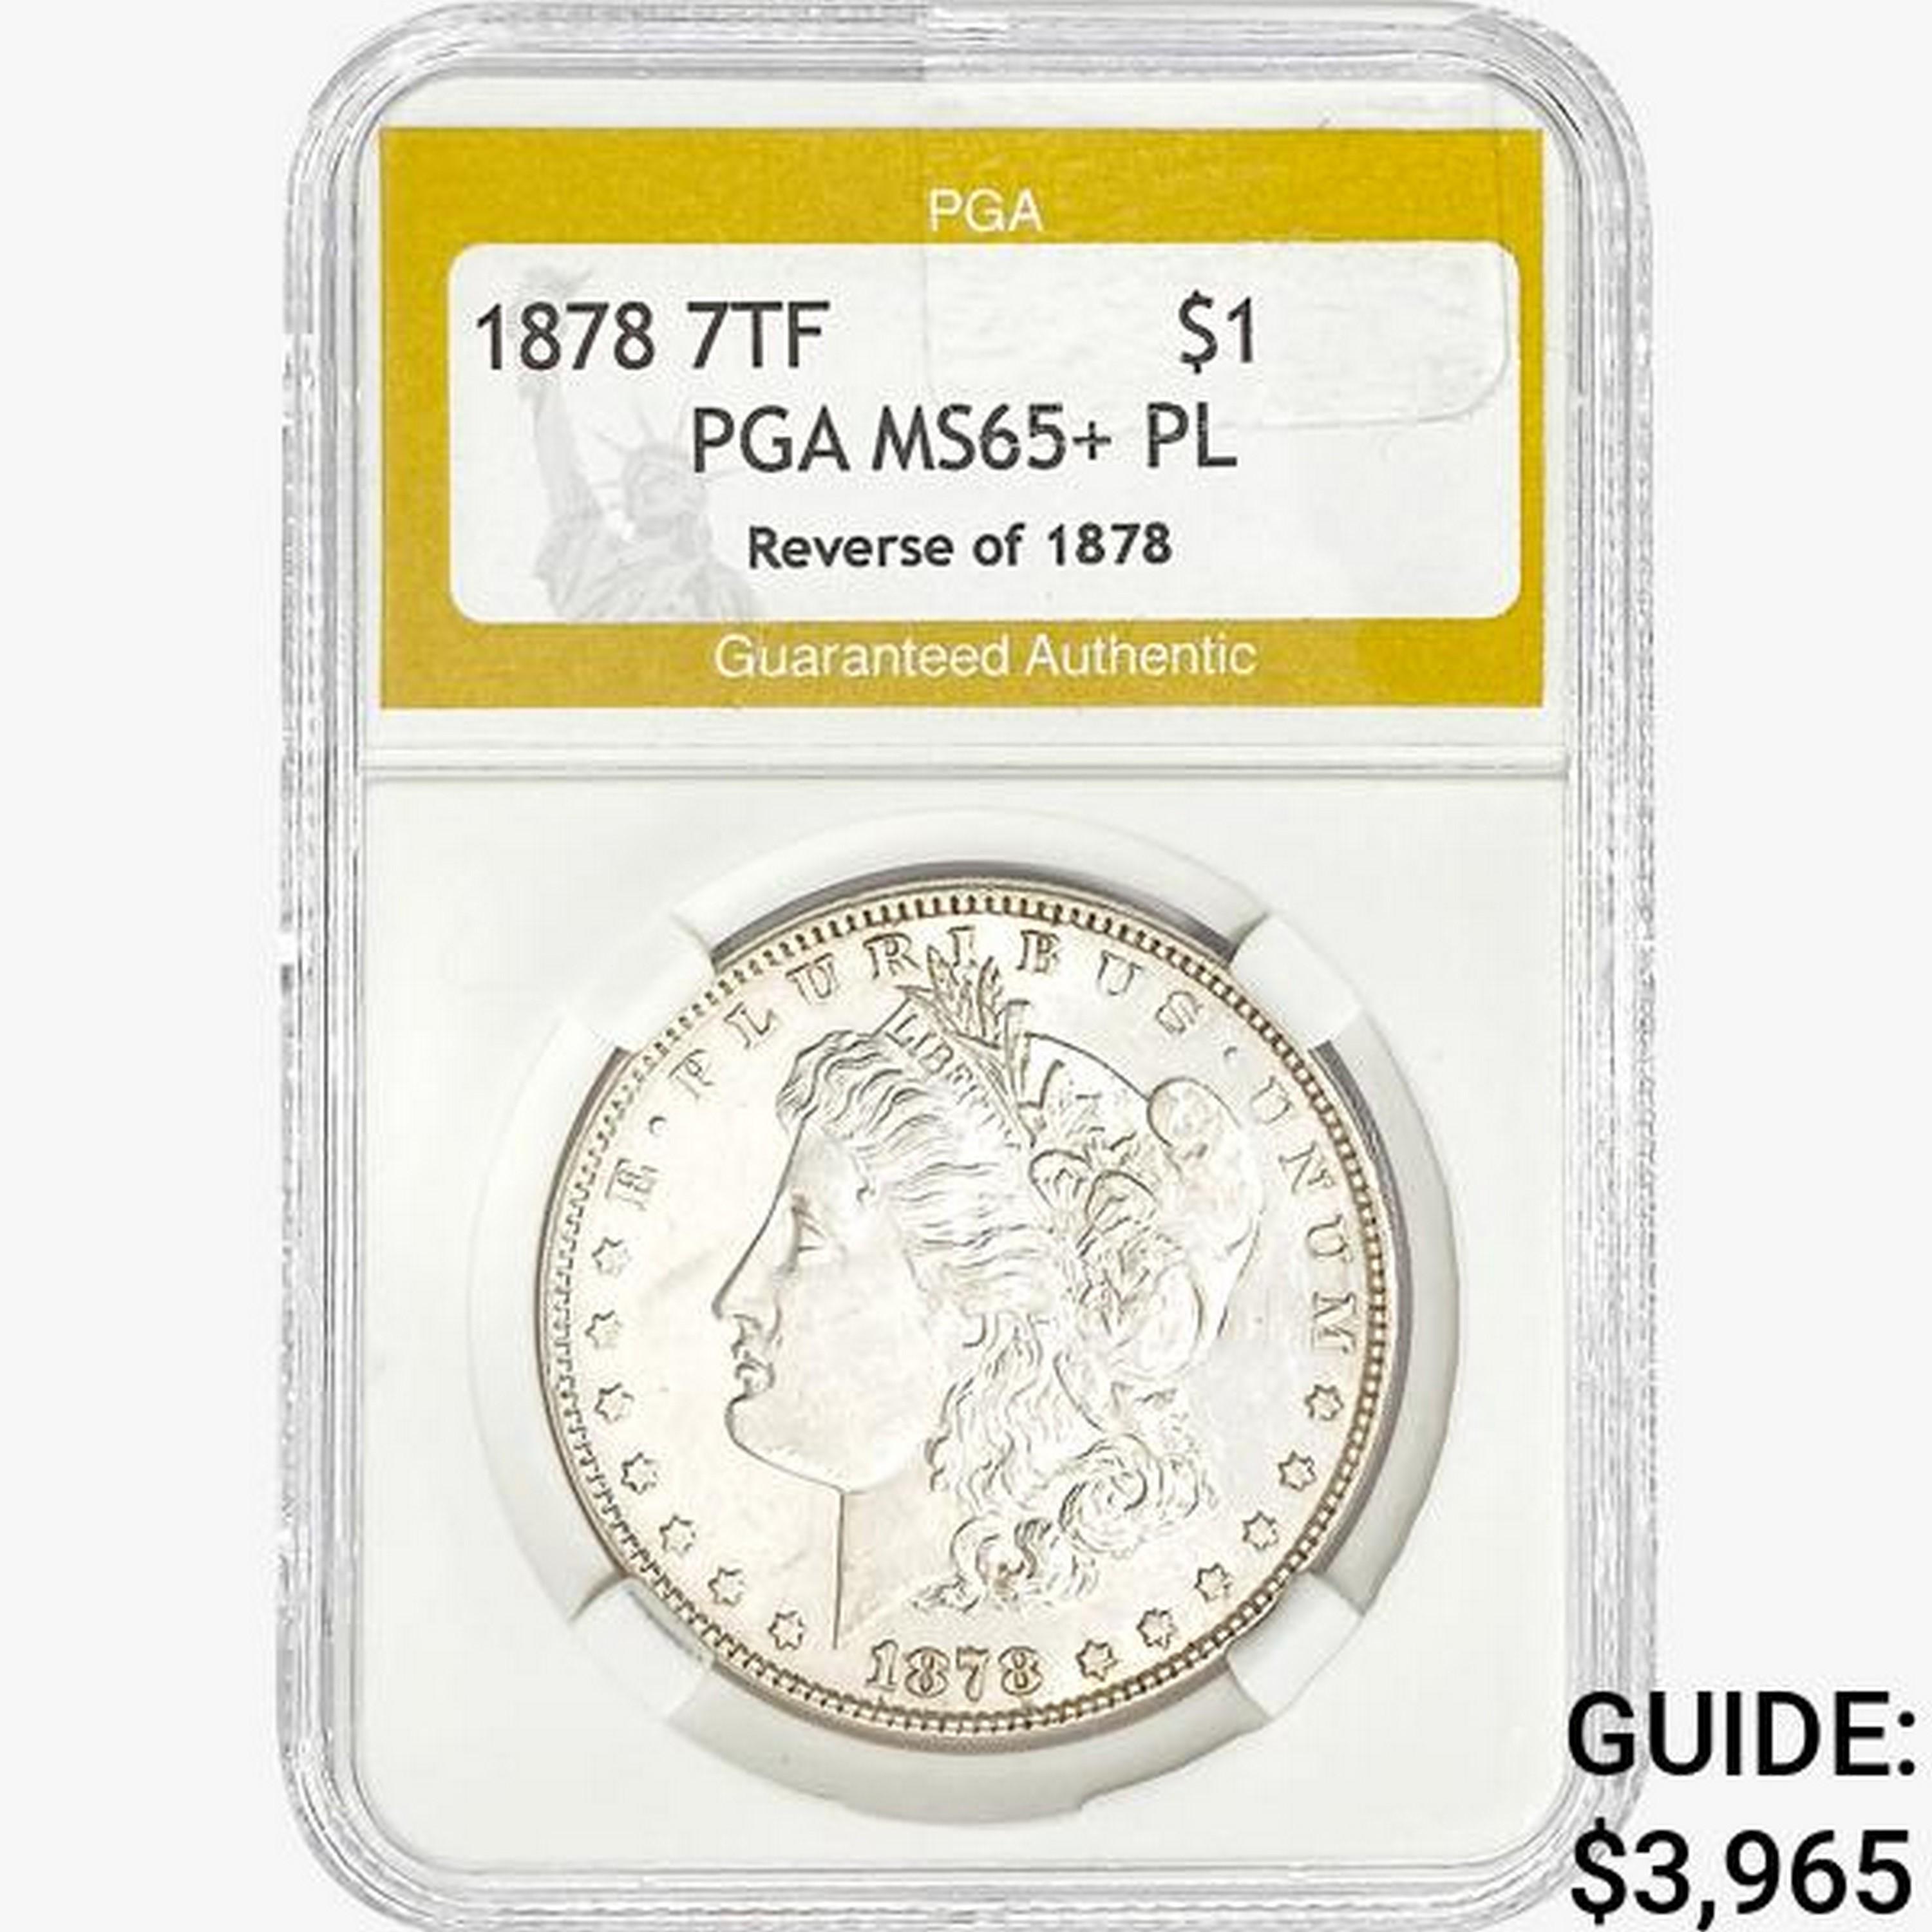 1878 7TF Morgan Silver Dollar PGA MS65+ PL REV 78